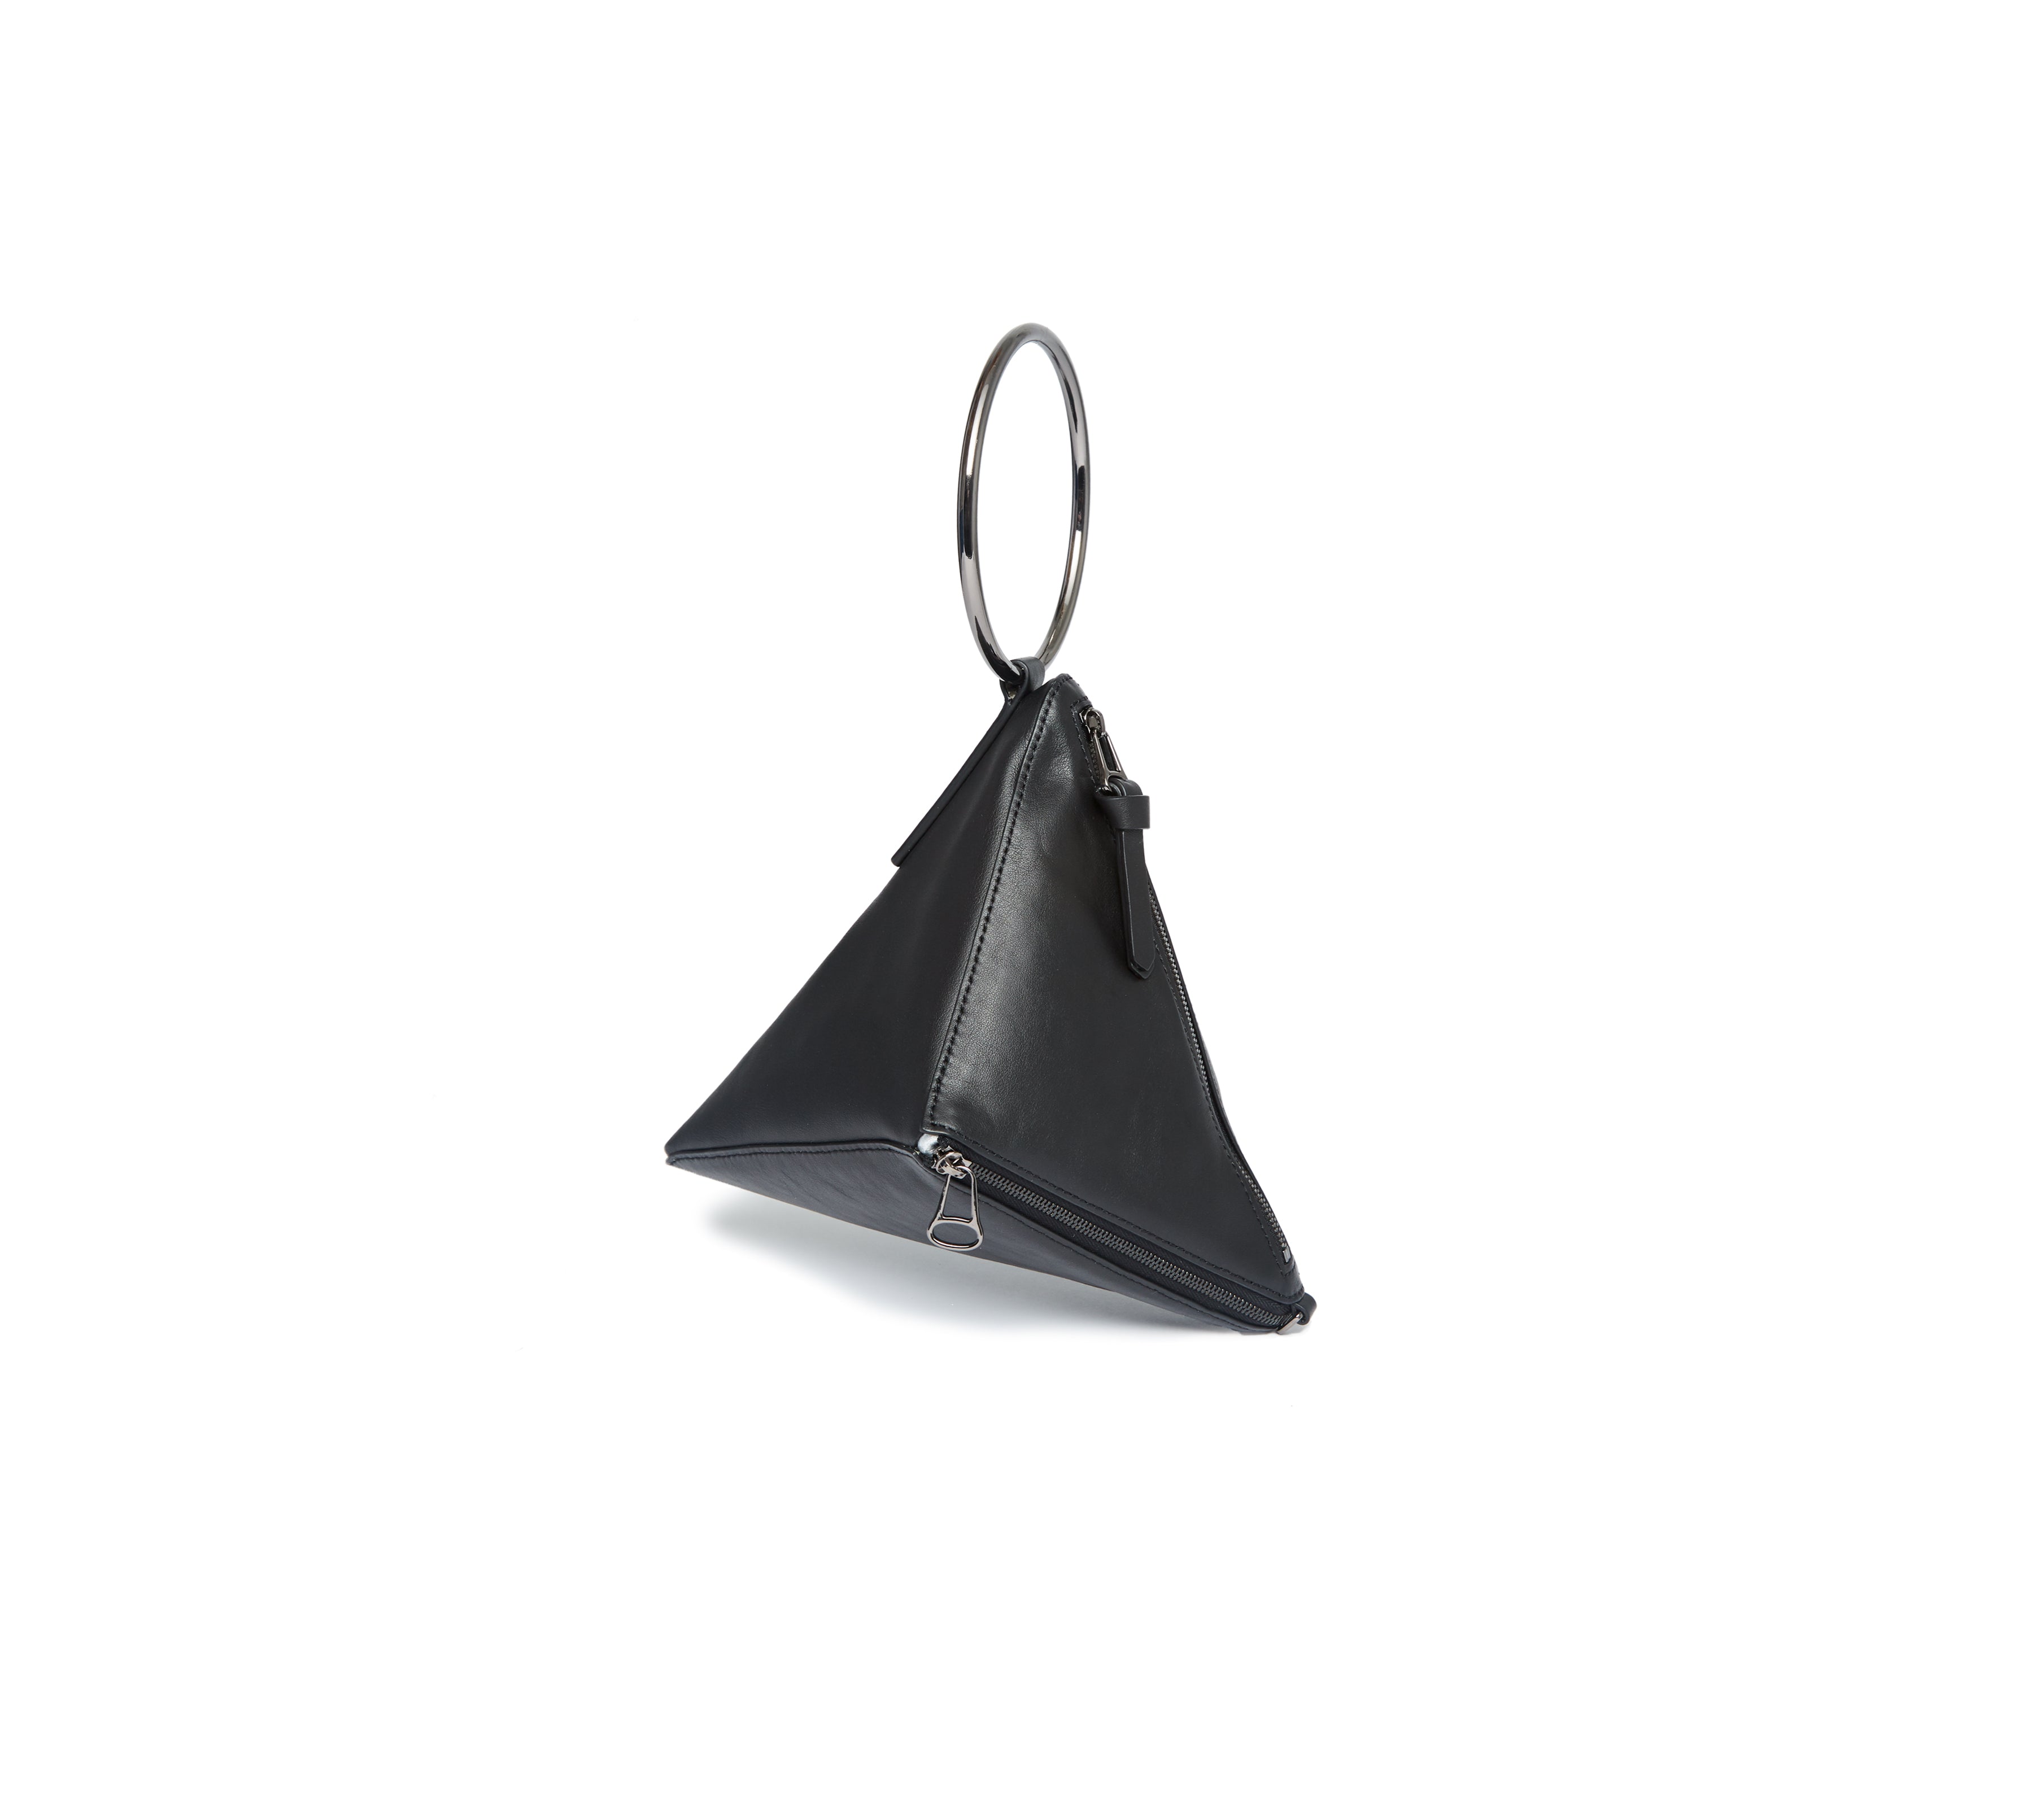 Tetra Convertible Crossbody Bag - Black/Silver